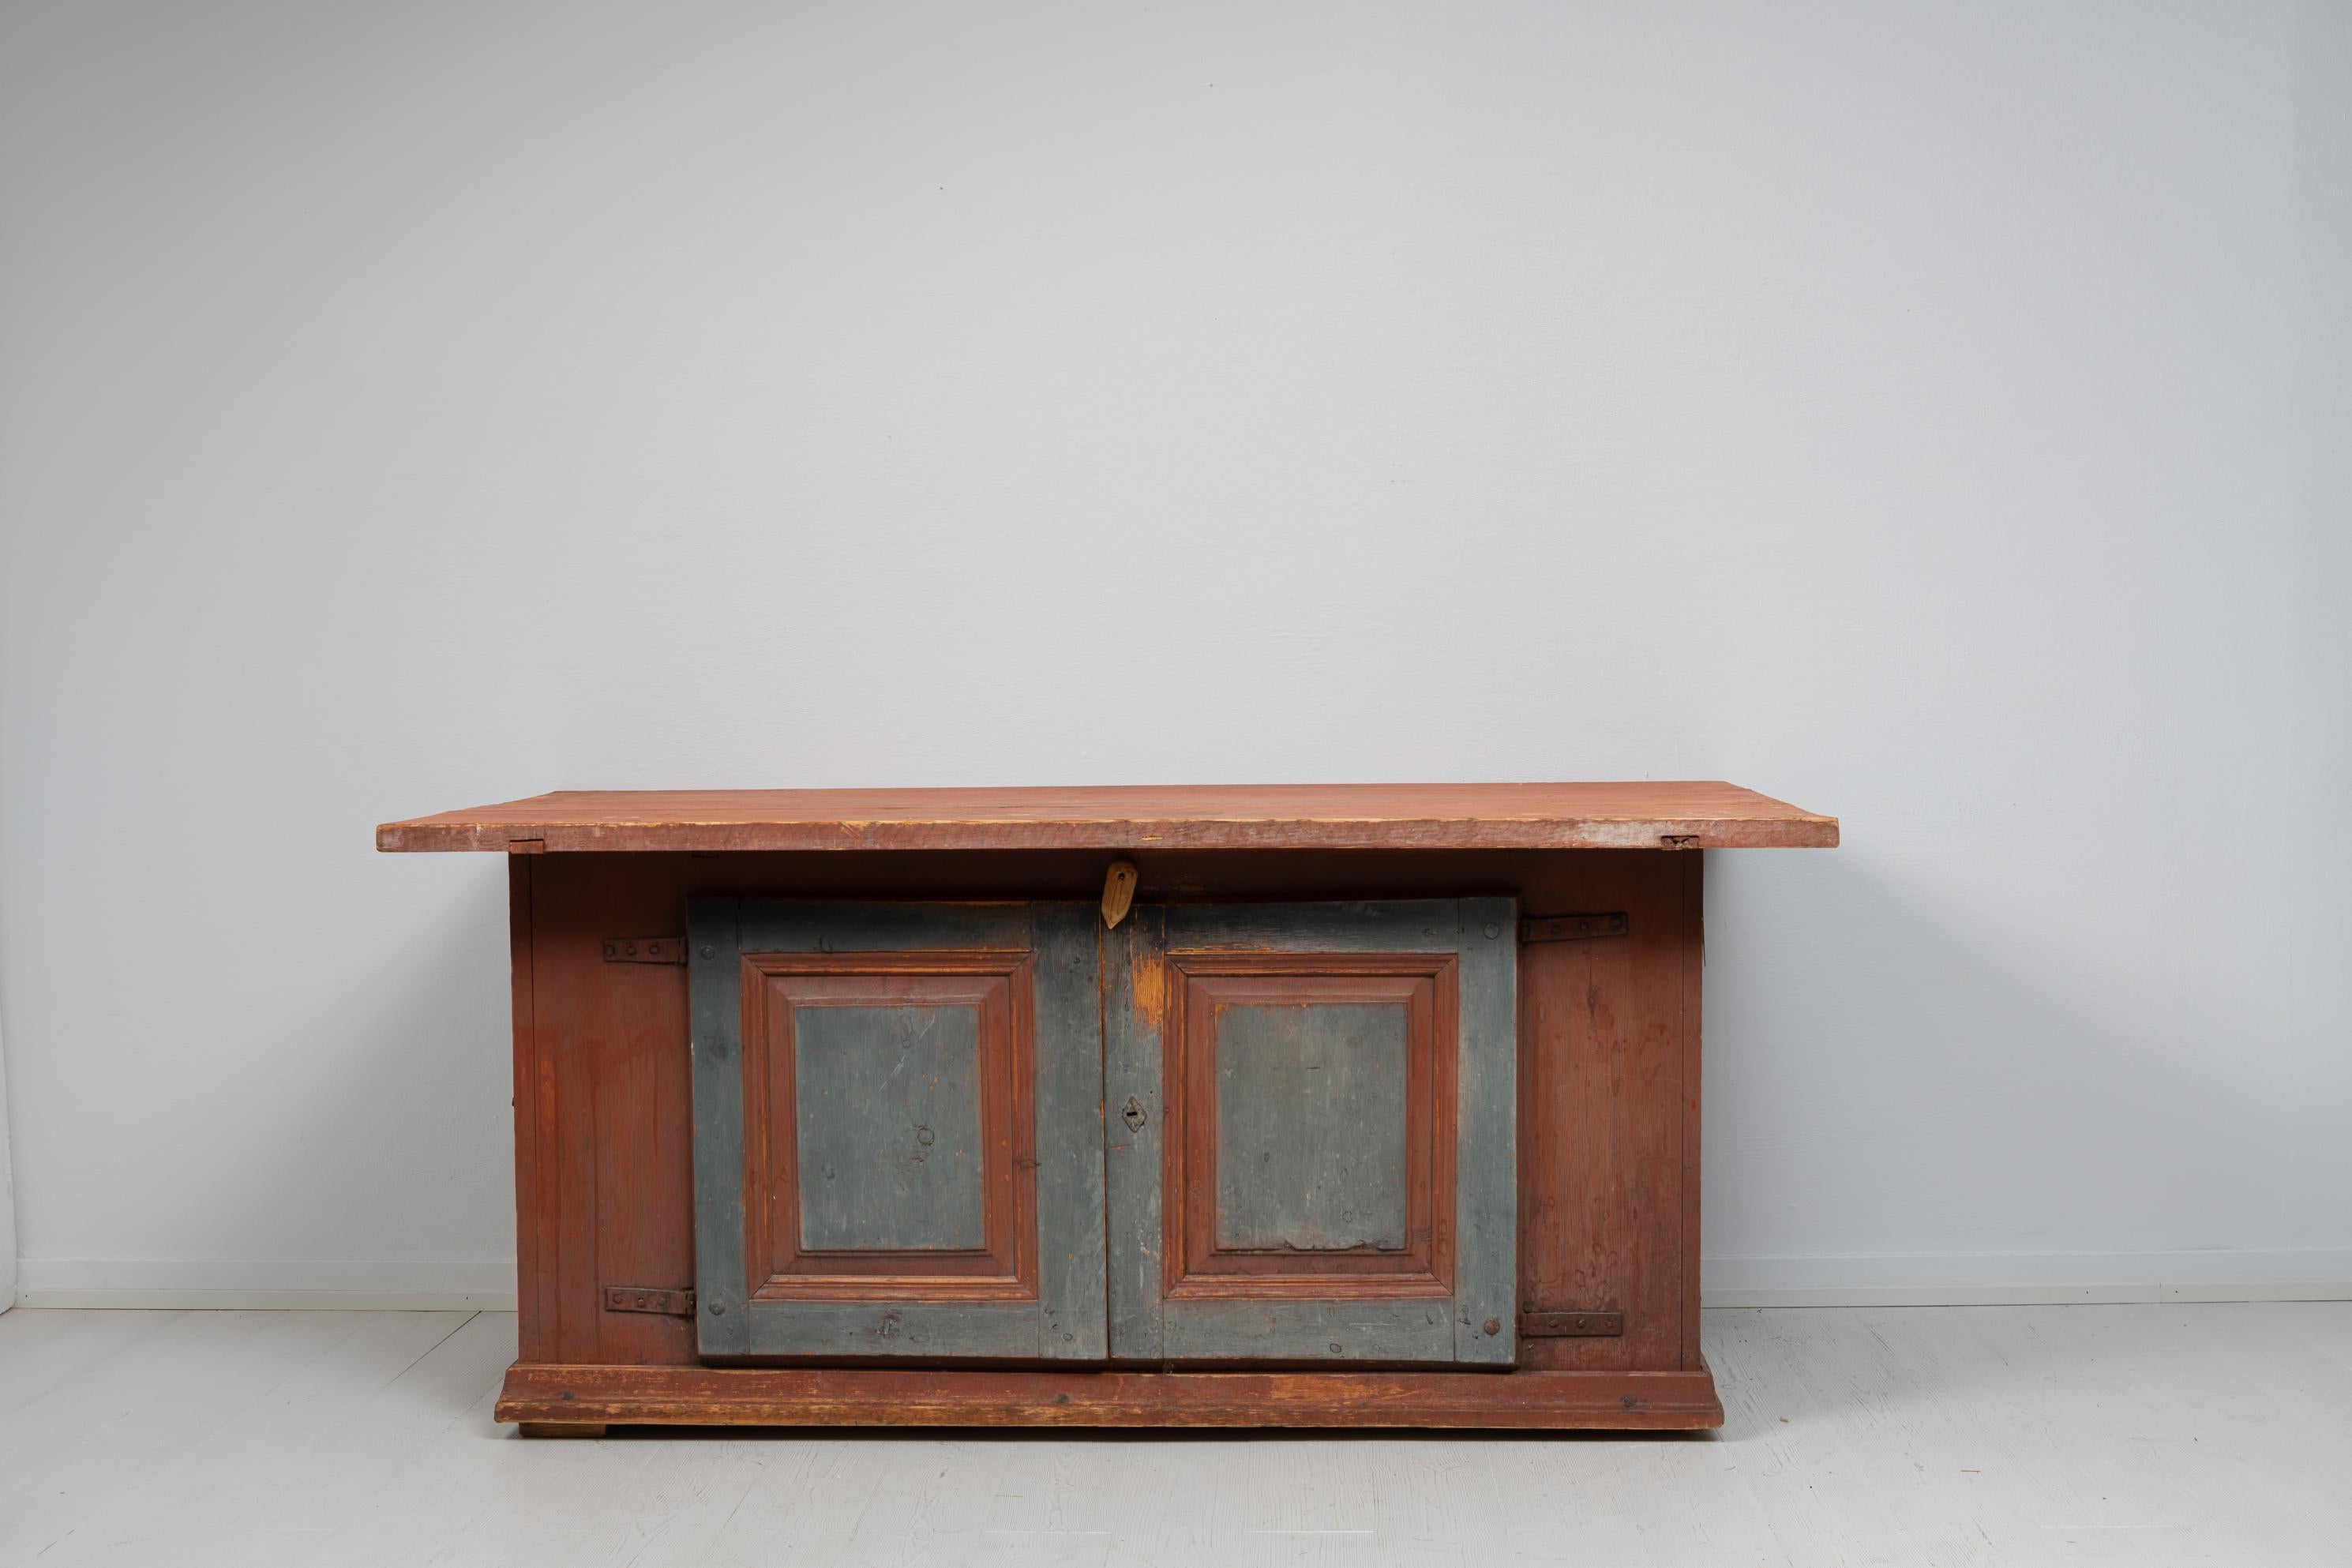 Handgefertigter Beistelltisch im Landhausstil in einem ungewöhnlichen Modell. Der Tisch ist schwedische Volkskunst und wurde in den frühen 1800er Jahren hergestellt. Es ist ein ungewöhnliches Modell, da es Aspekte von Tischen und Sideboards